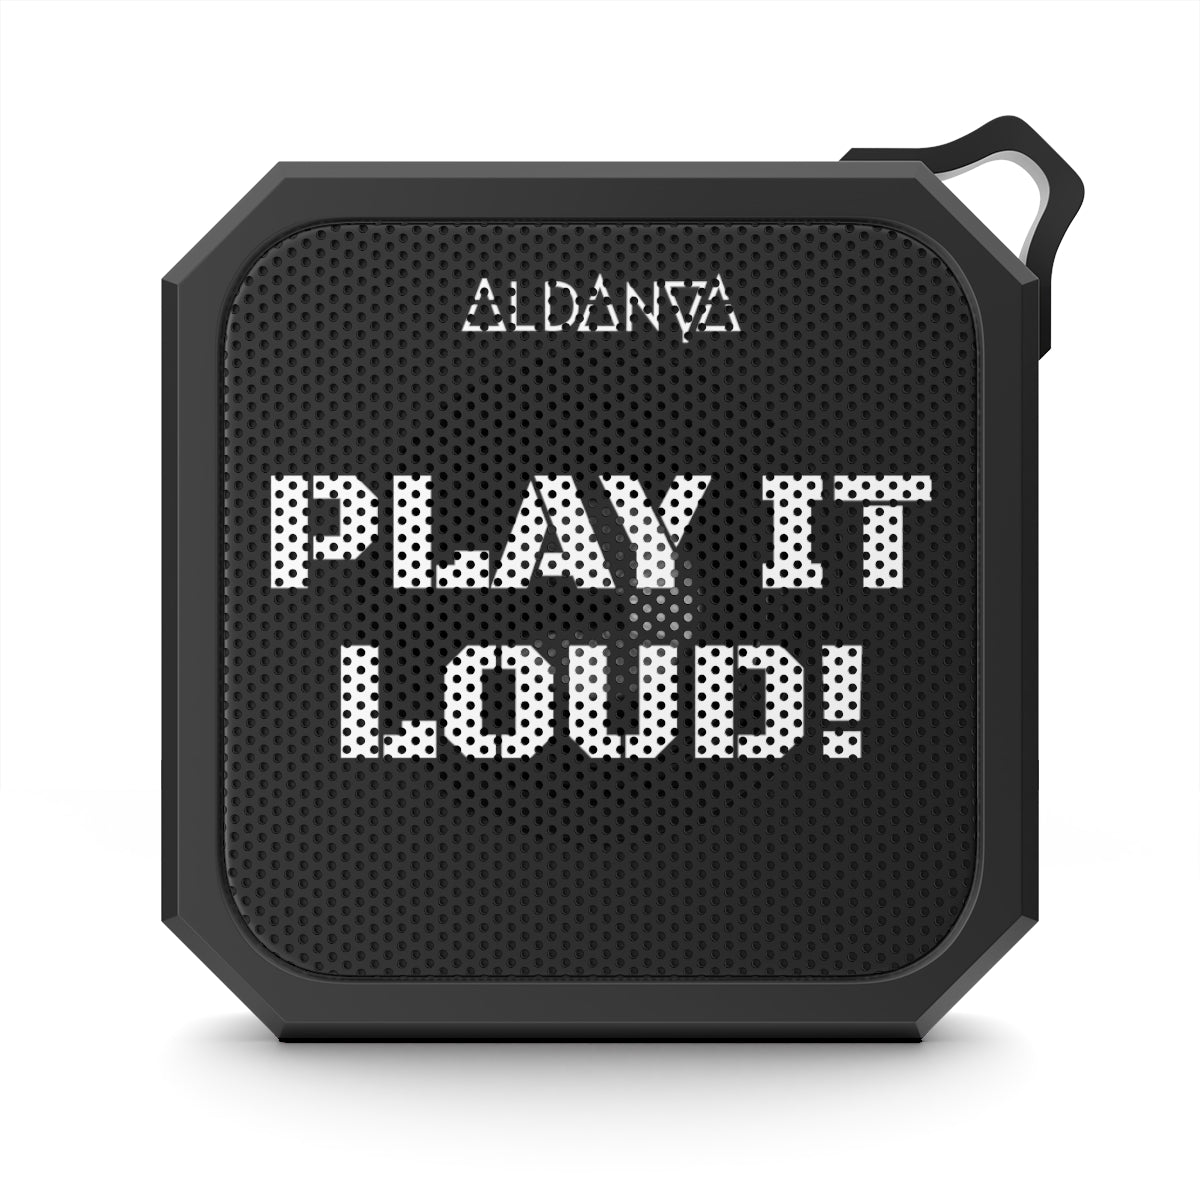 ALDANYA - "PLAY IT LOUD" - Blackwater Outdoor Bluetooth Speaker